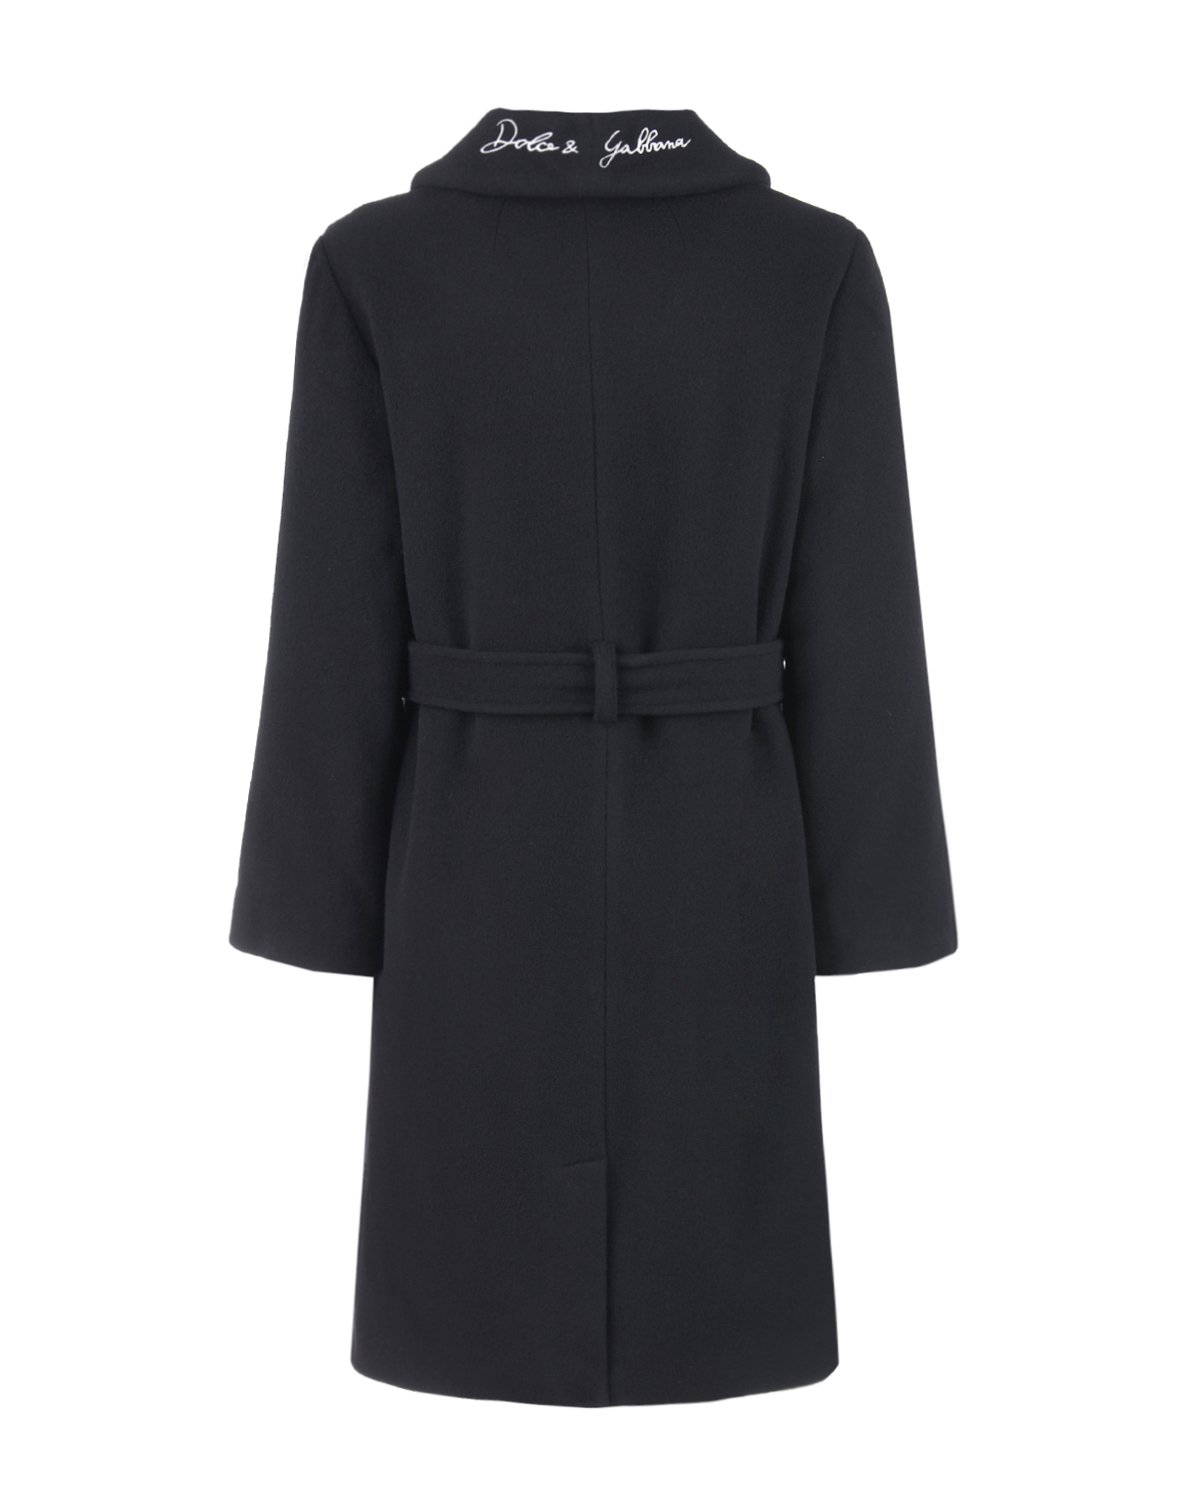 Шерстяное пальто с вышивкой на воротнике Dolce&Gabbana детское, размер 140, цвет черный - фото 3